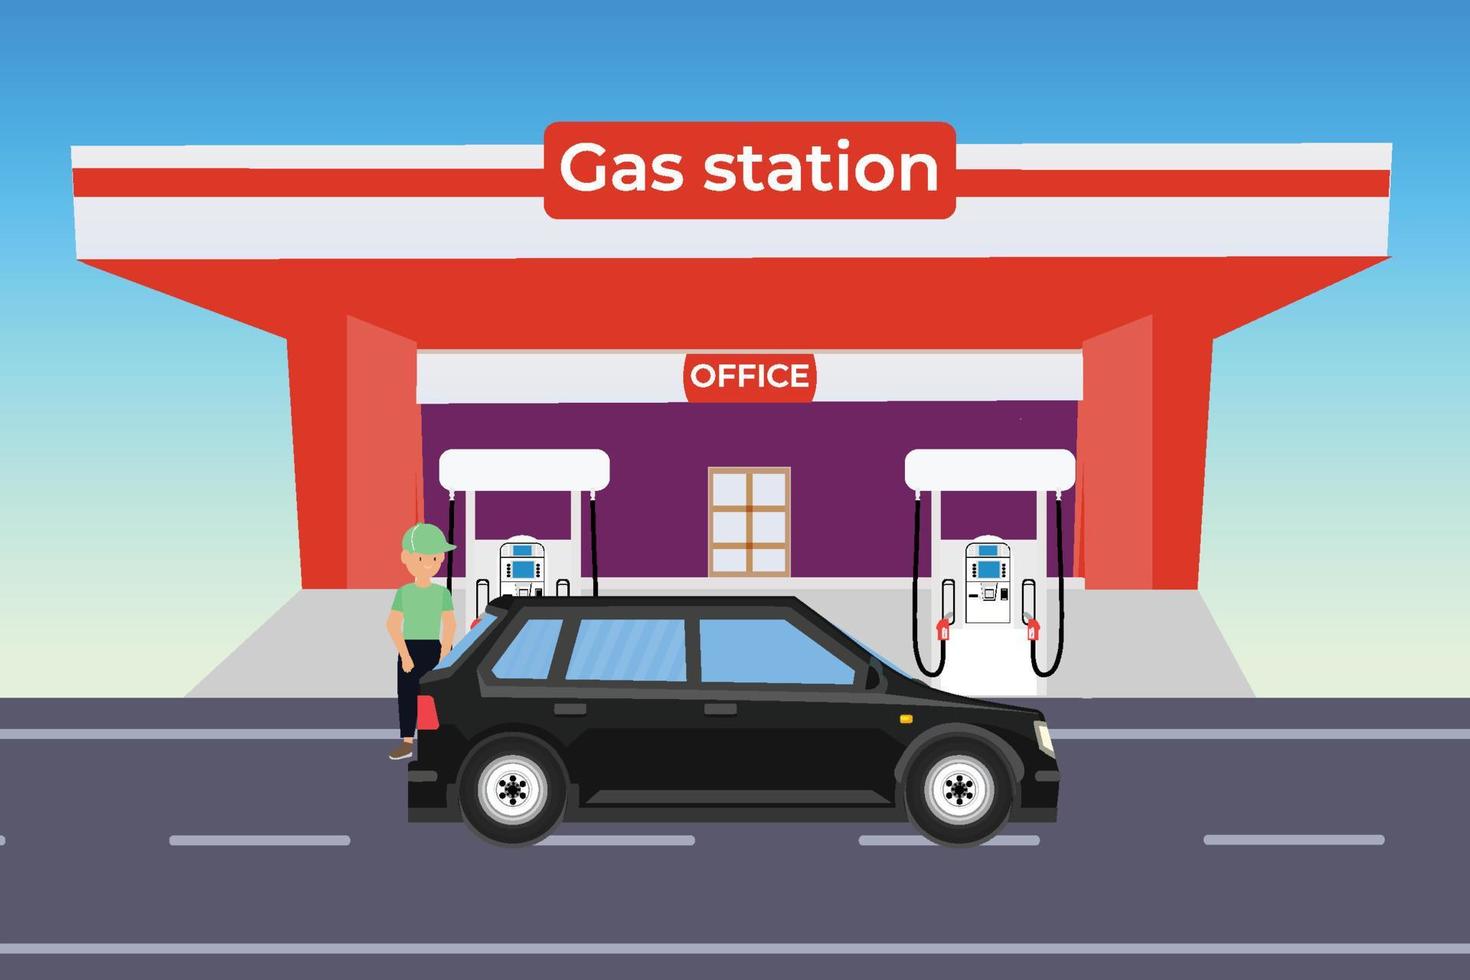 auto che riceve carburante o gas da un vettore di stazione di servizio. i lavoratori delle stazioni di servizio riempiono un serbatoio di carburante per auto con concetti di benzina o gas. uomo che riempie gas in una stazione di benzina e olio con ufficio all'interno.